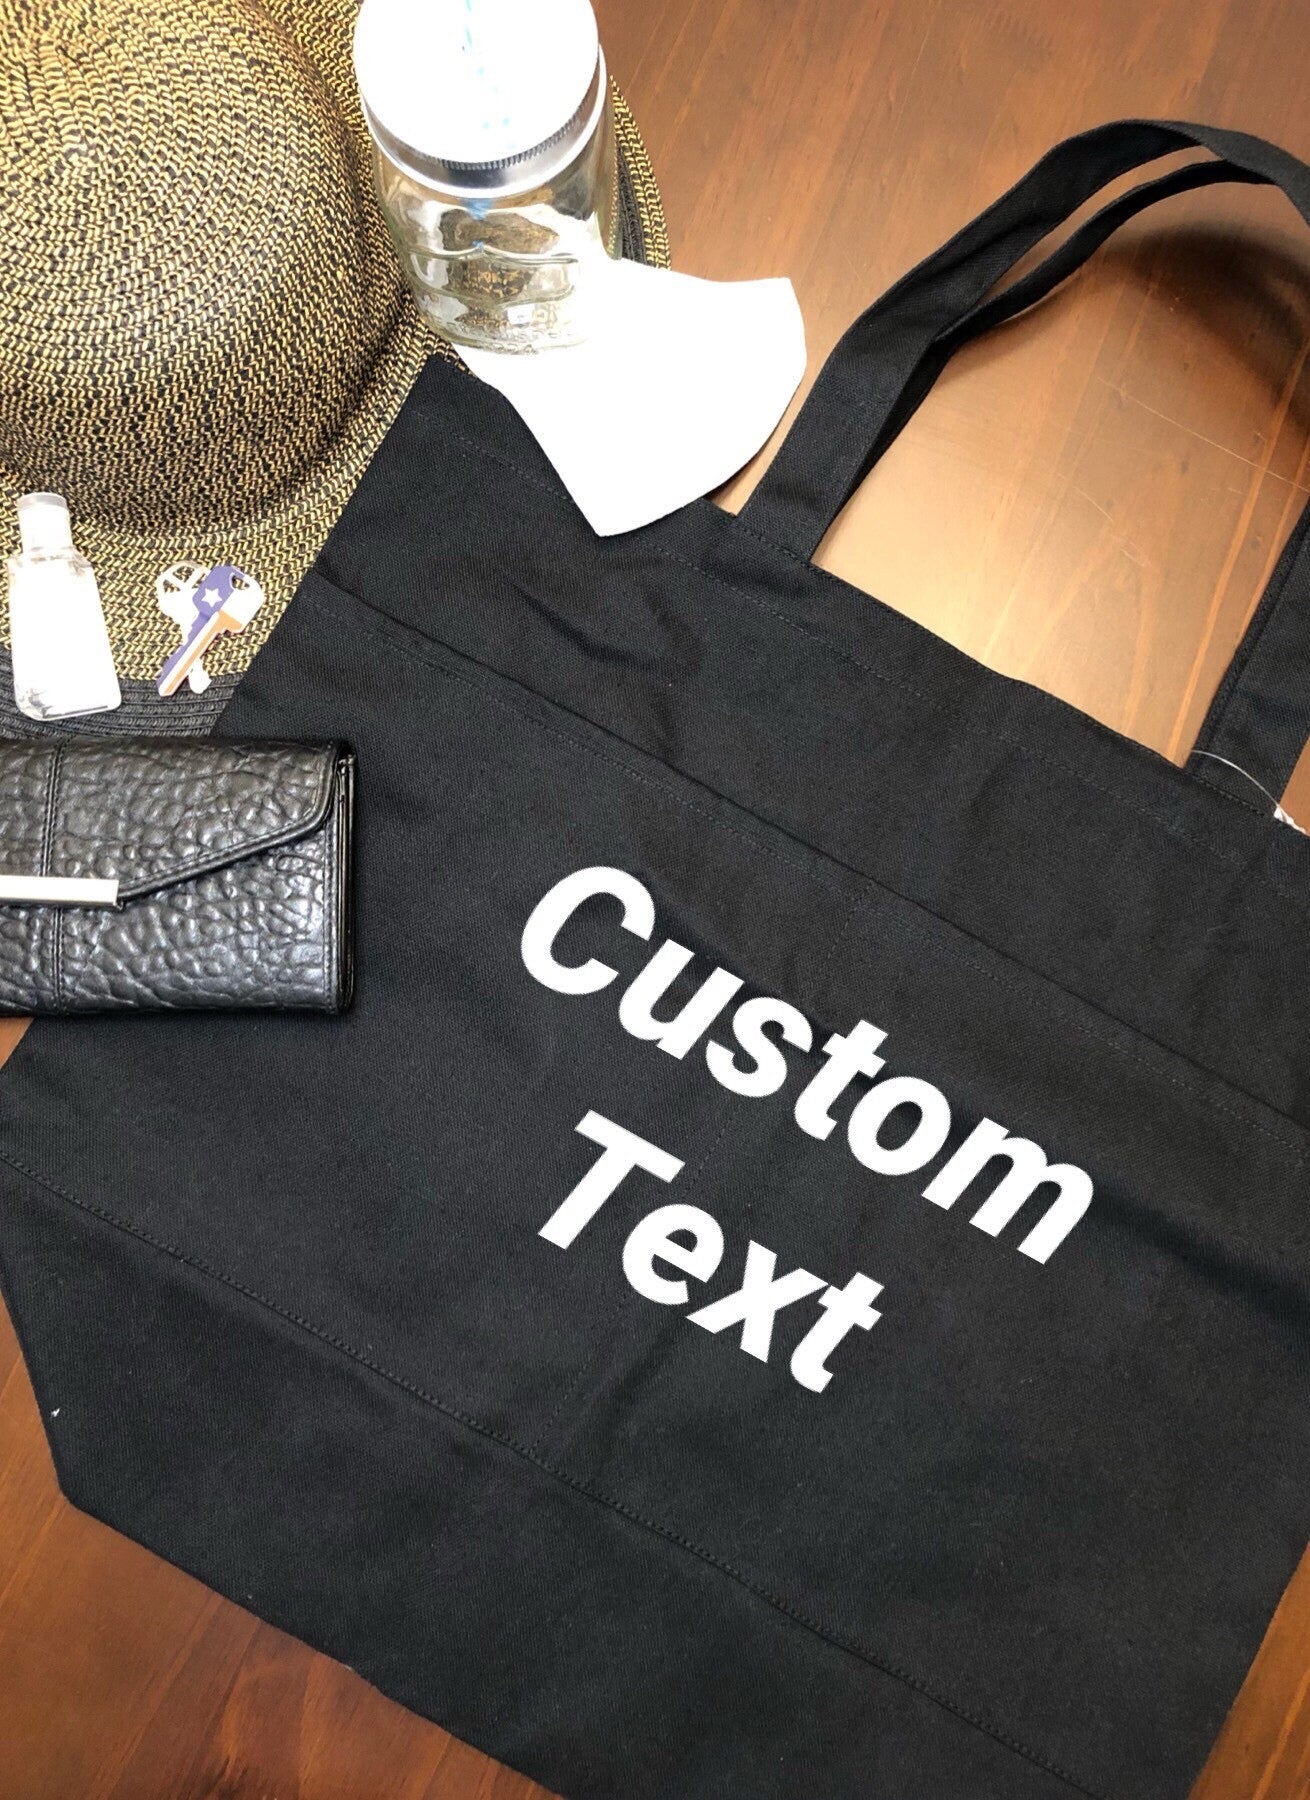 Custom Tote Bags: Create Your Printed Tote Bags Design